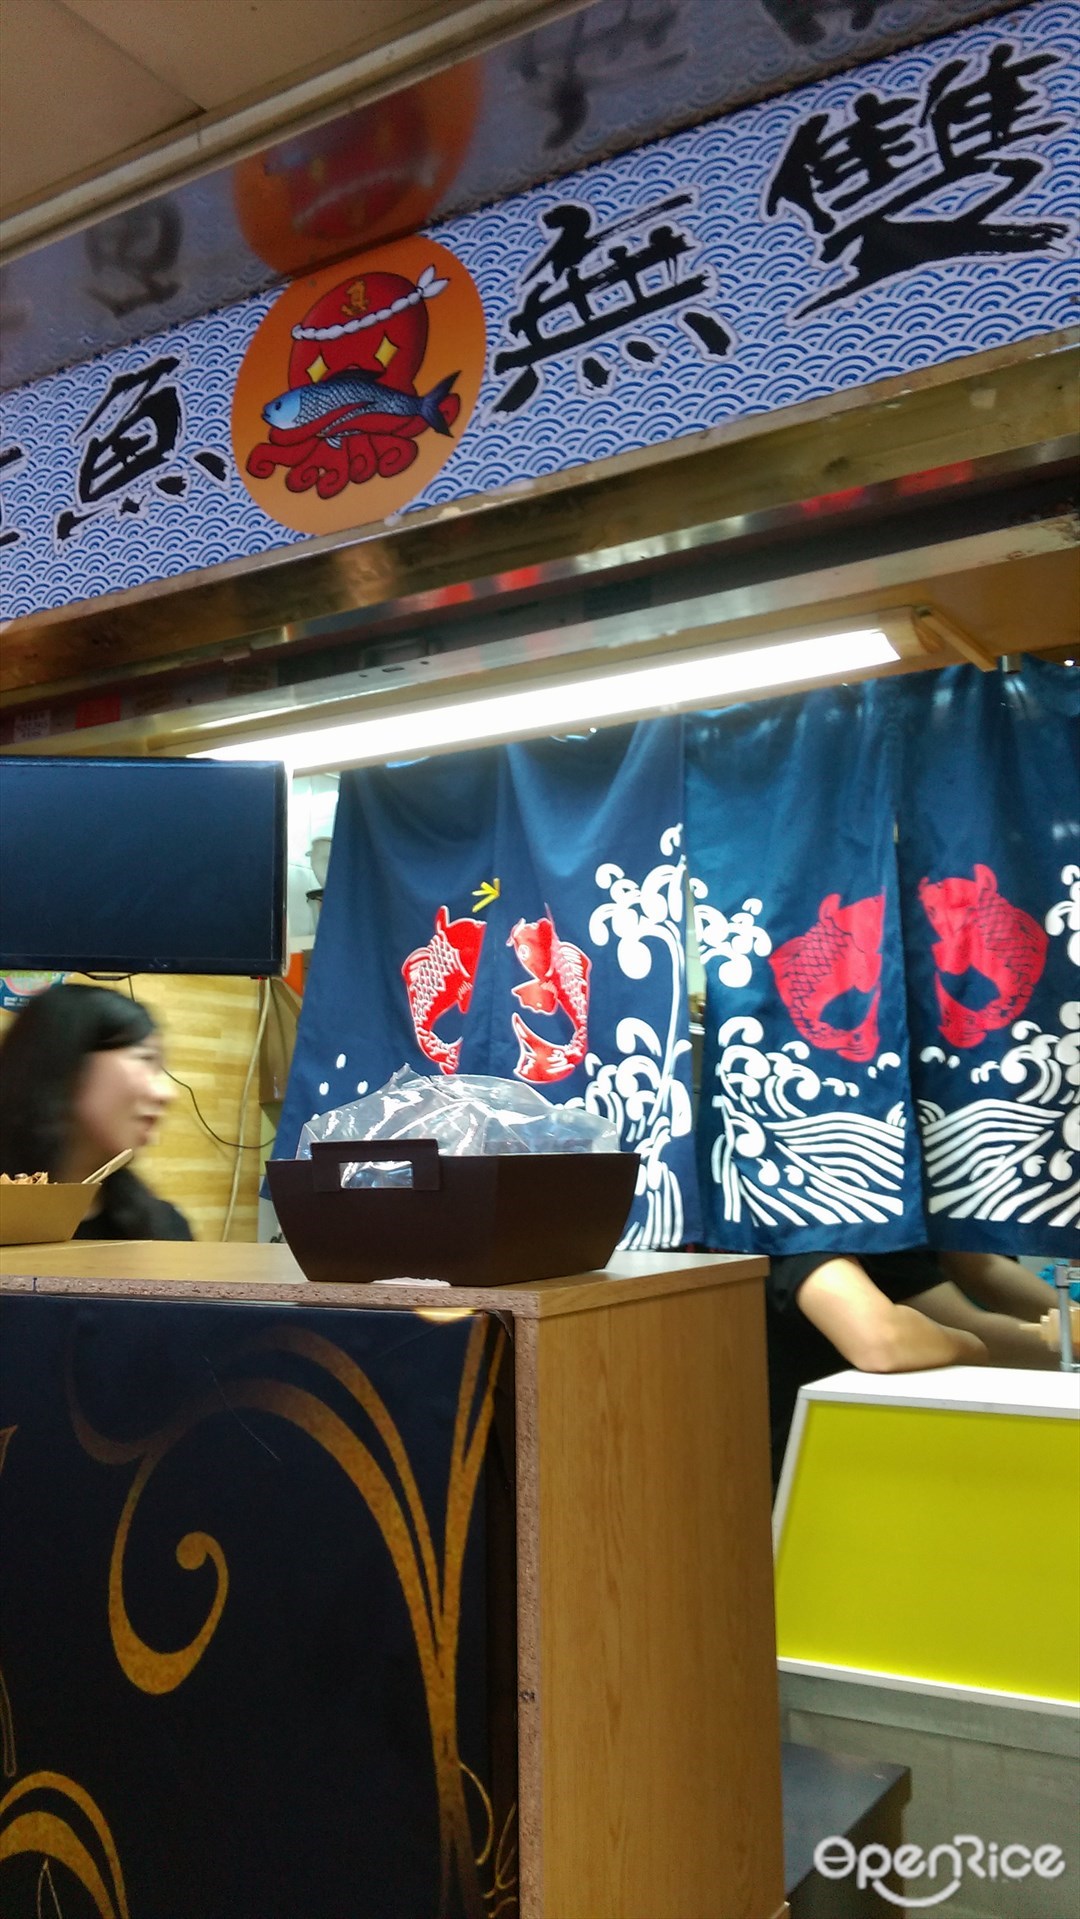 真 章鱼无双 香港葵芳葵涌广场的日本菜小食店 Openrice 香港开饭喇